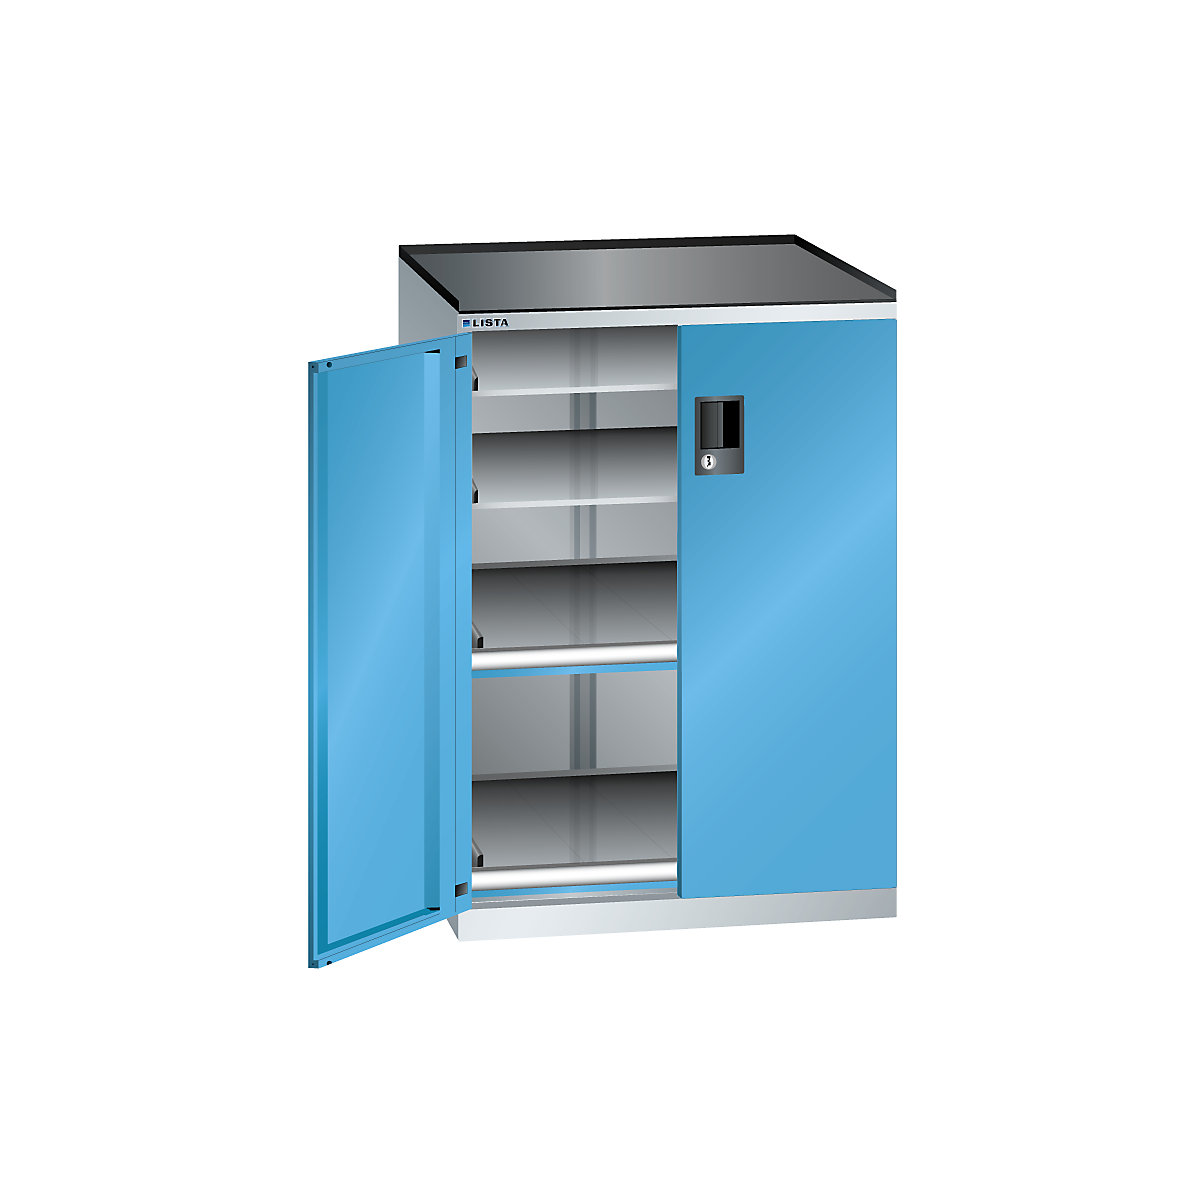 Dulap cu sertare, cu uși cu canaturi – LISTA, înălțime 1020 mm, 4 polițe, capacitate portantă 200 kg, albastru deschis-1